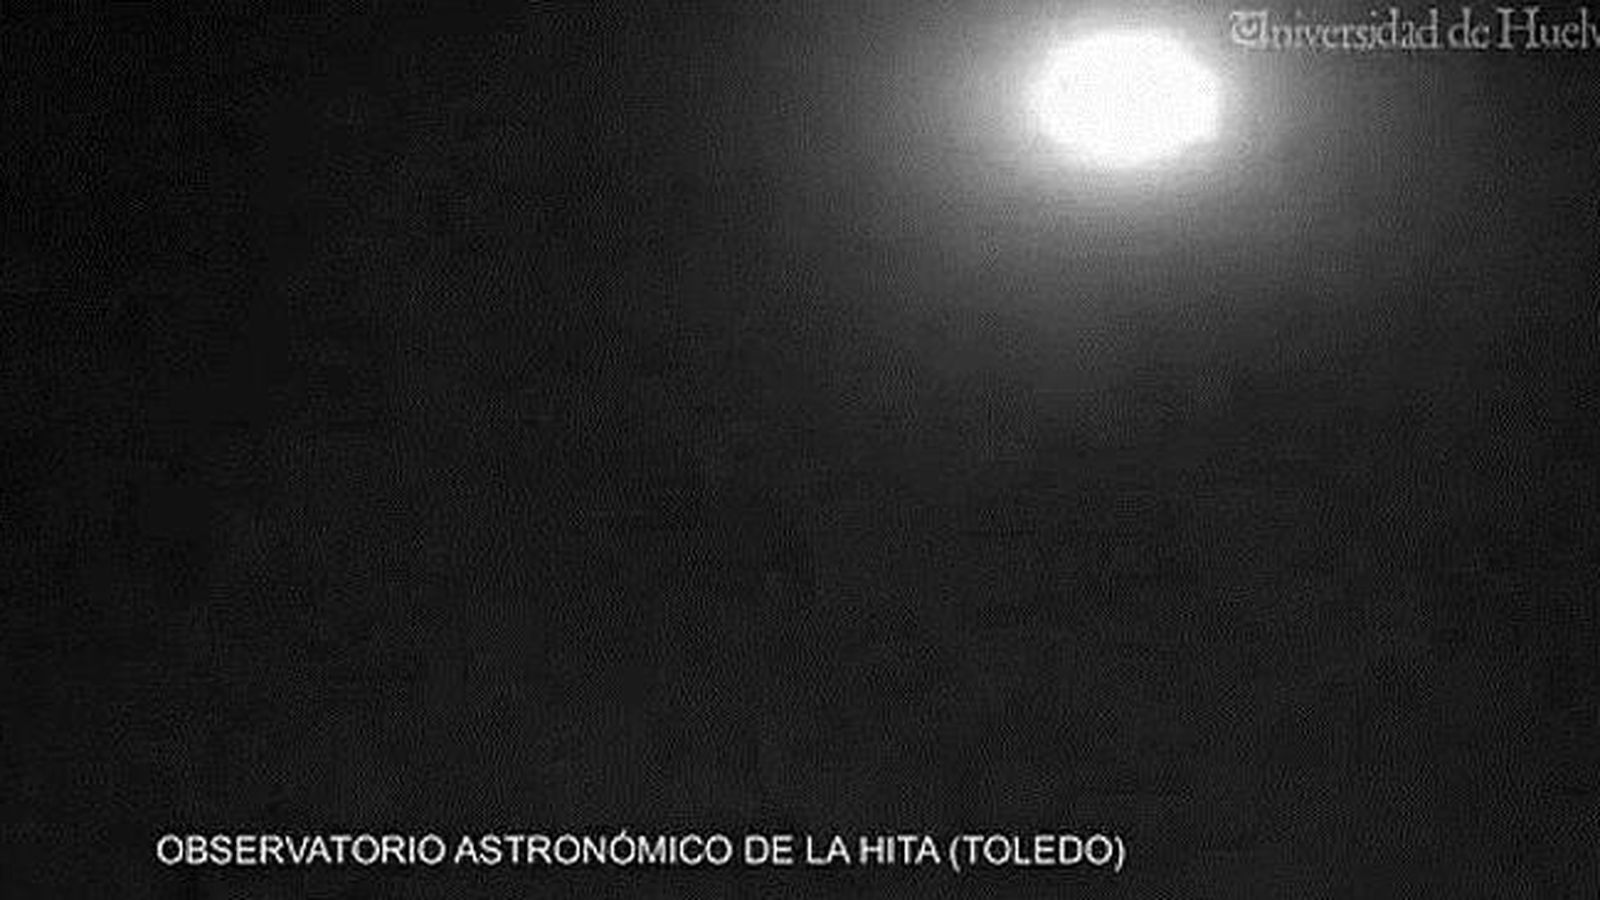 Foto: Bola de fuego vista sobre la provincia de Toledo (Observatorio Astronómico de La Hita/Universidad de Huelva)